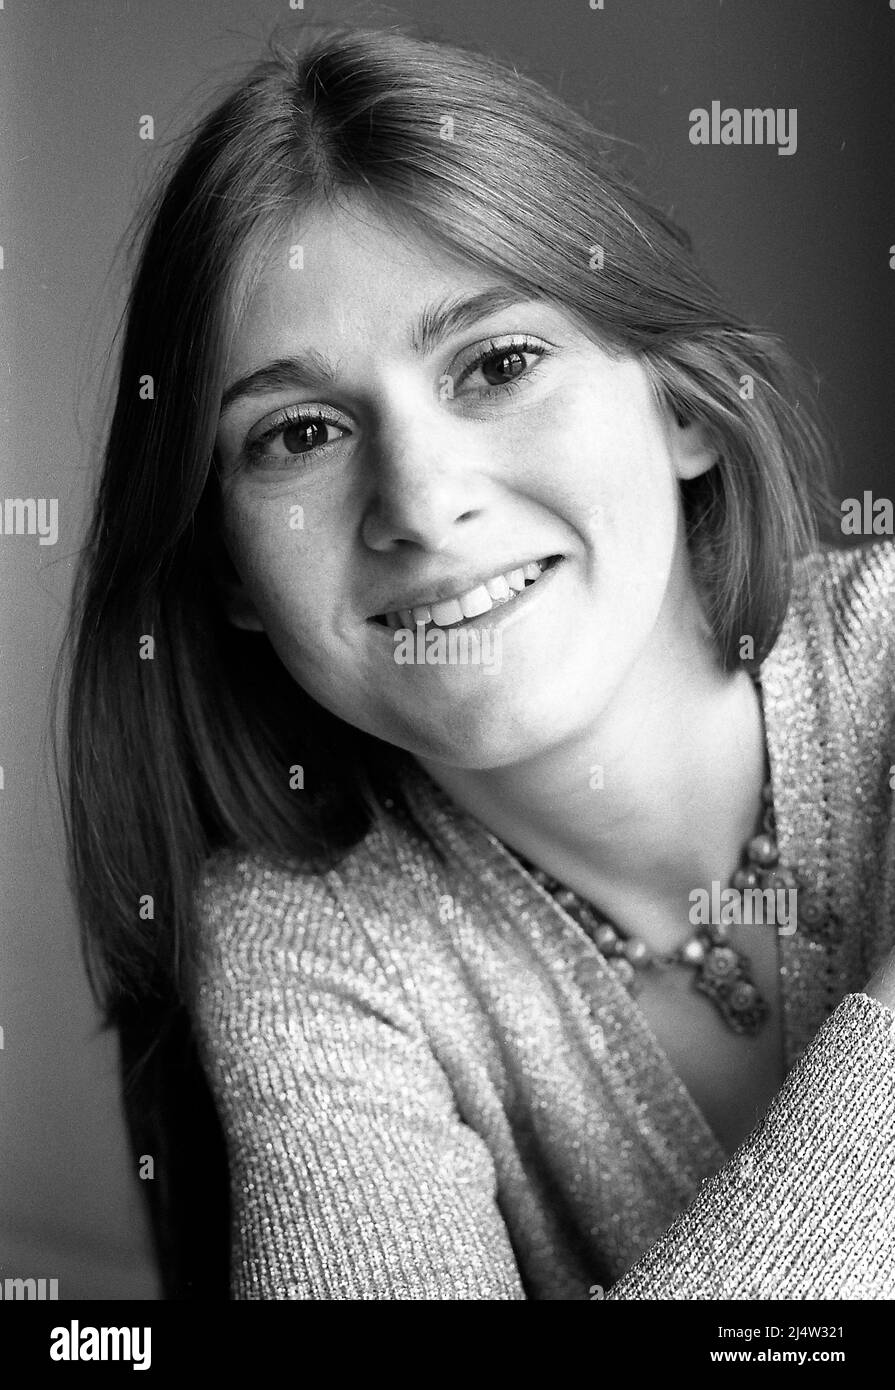 Retrato en blanco y negro con luz suave de una mujer joven. Foto de stock